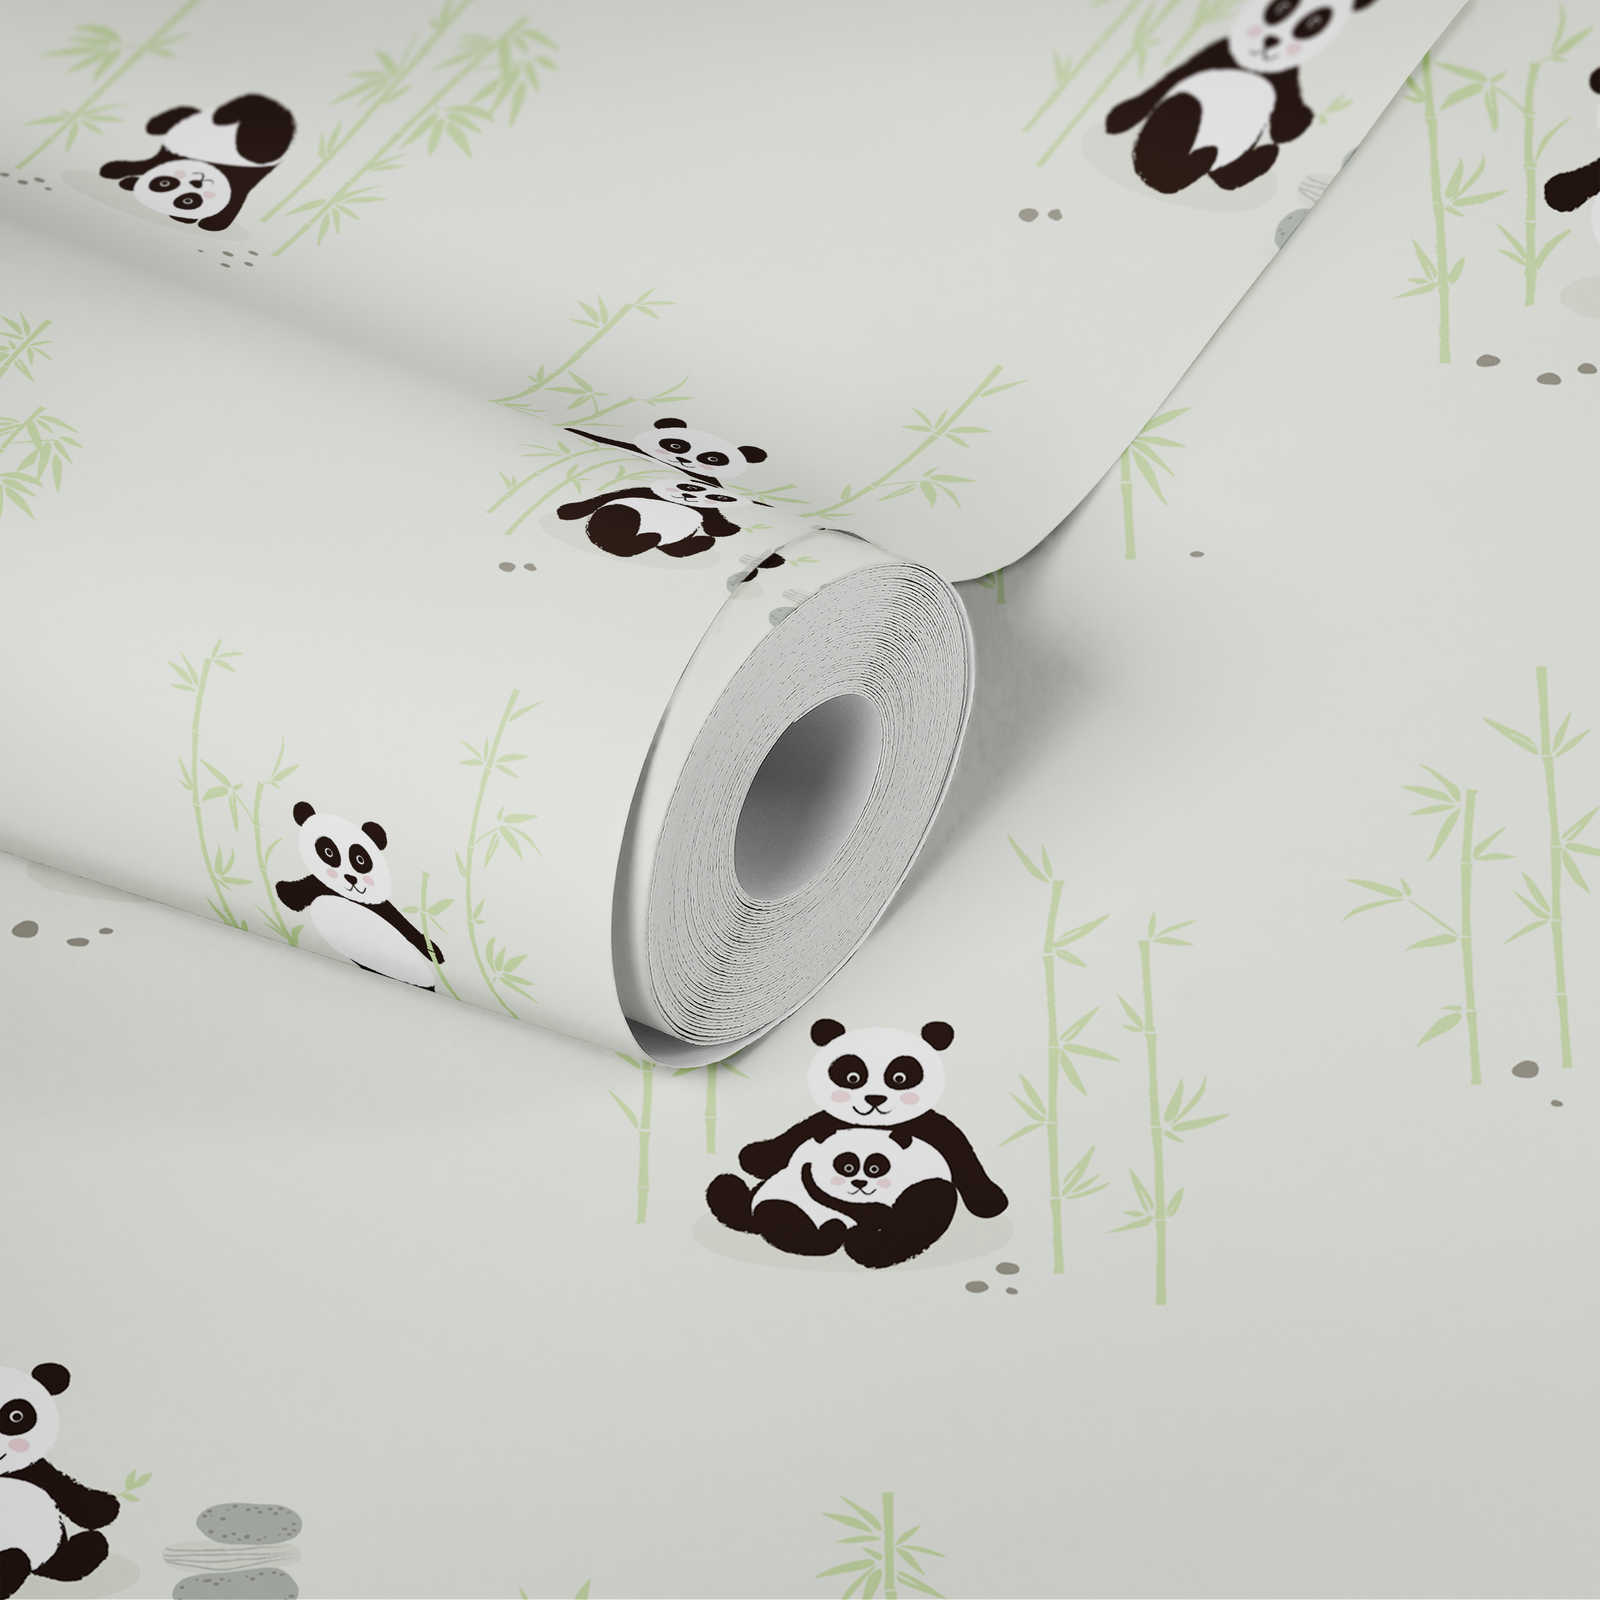             Papier peint panda pour chambre d'enfant - vert, noir, blanc
        